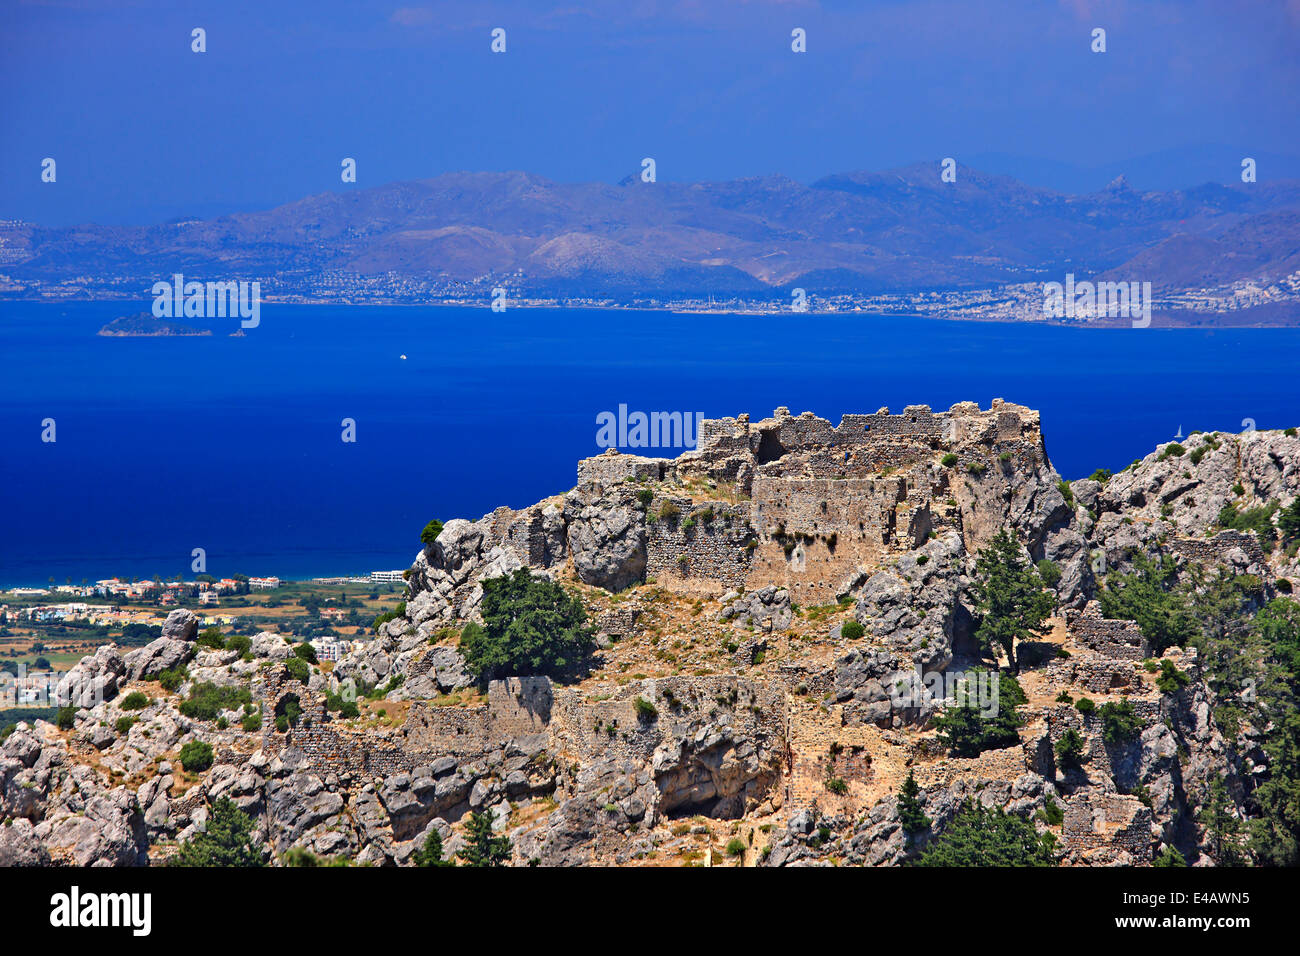 Le Château de Pyli surplombant le détroit entre l'île de Kos et la côte turque (en arrière-plan). Dodécanèse, Grèce. Banque D'Images